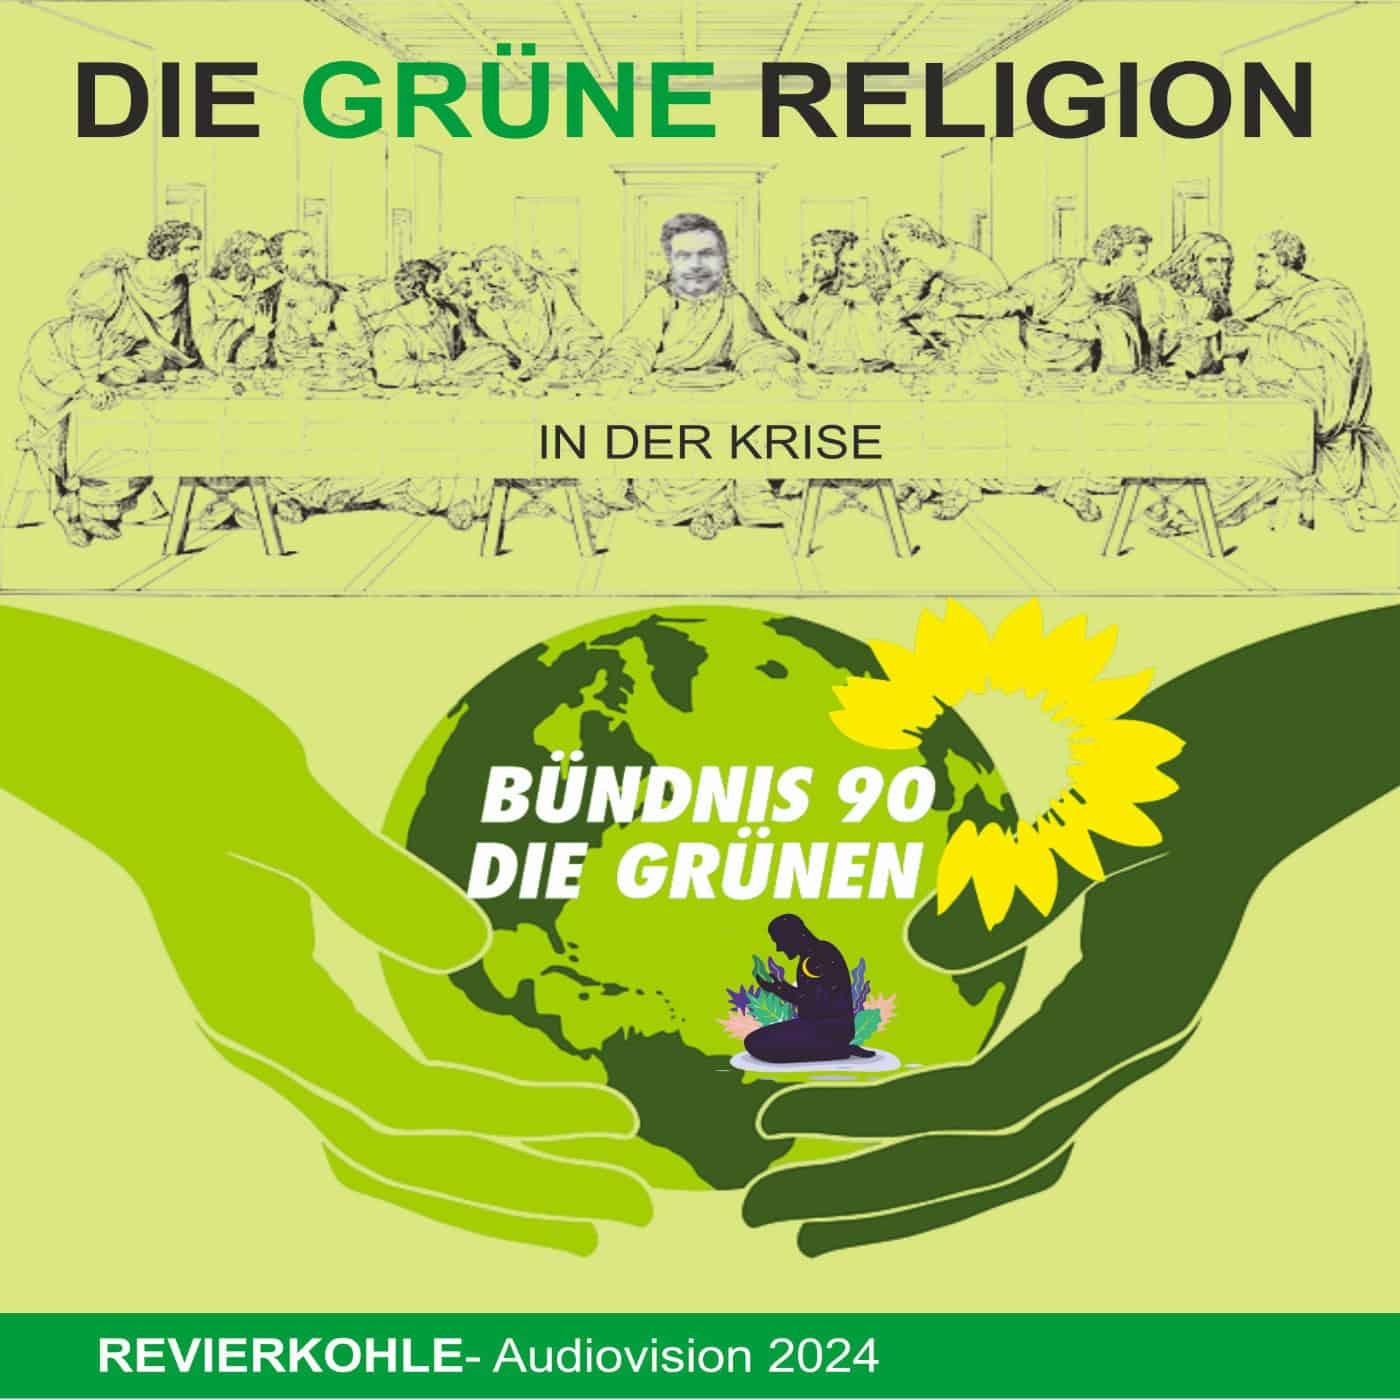 Die Grüne Religion